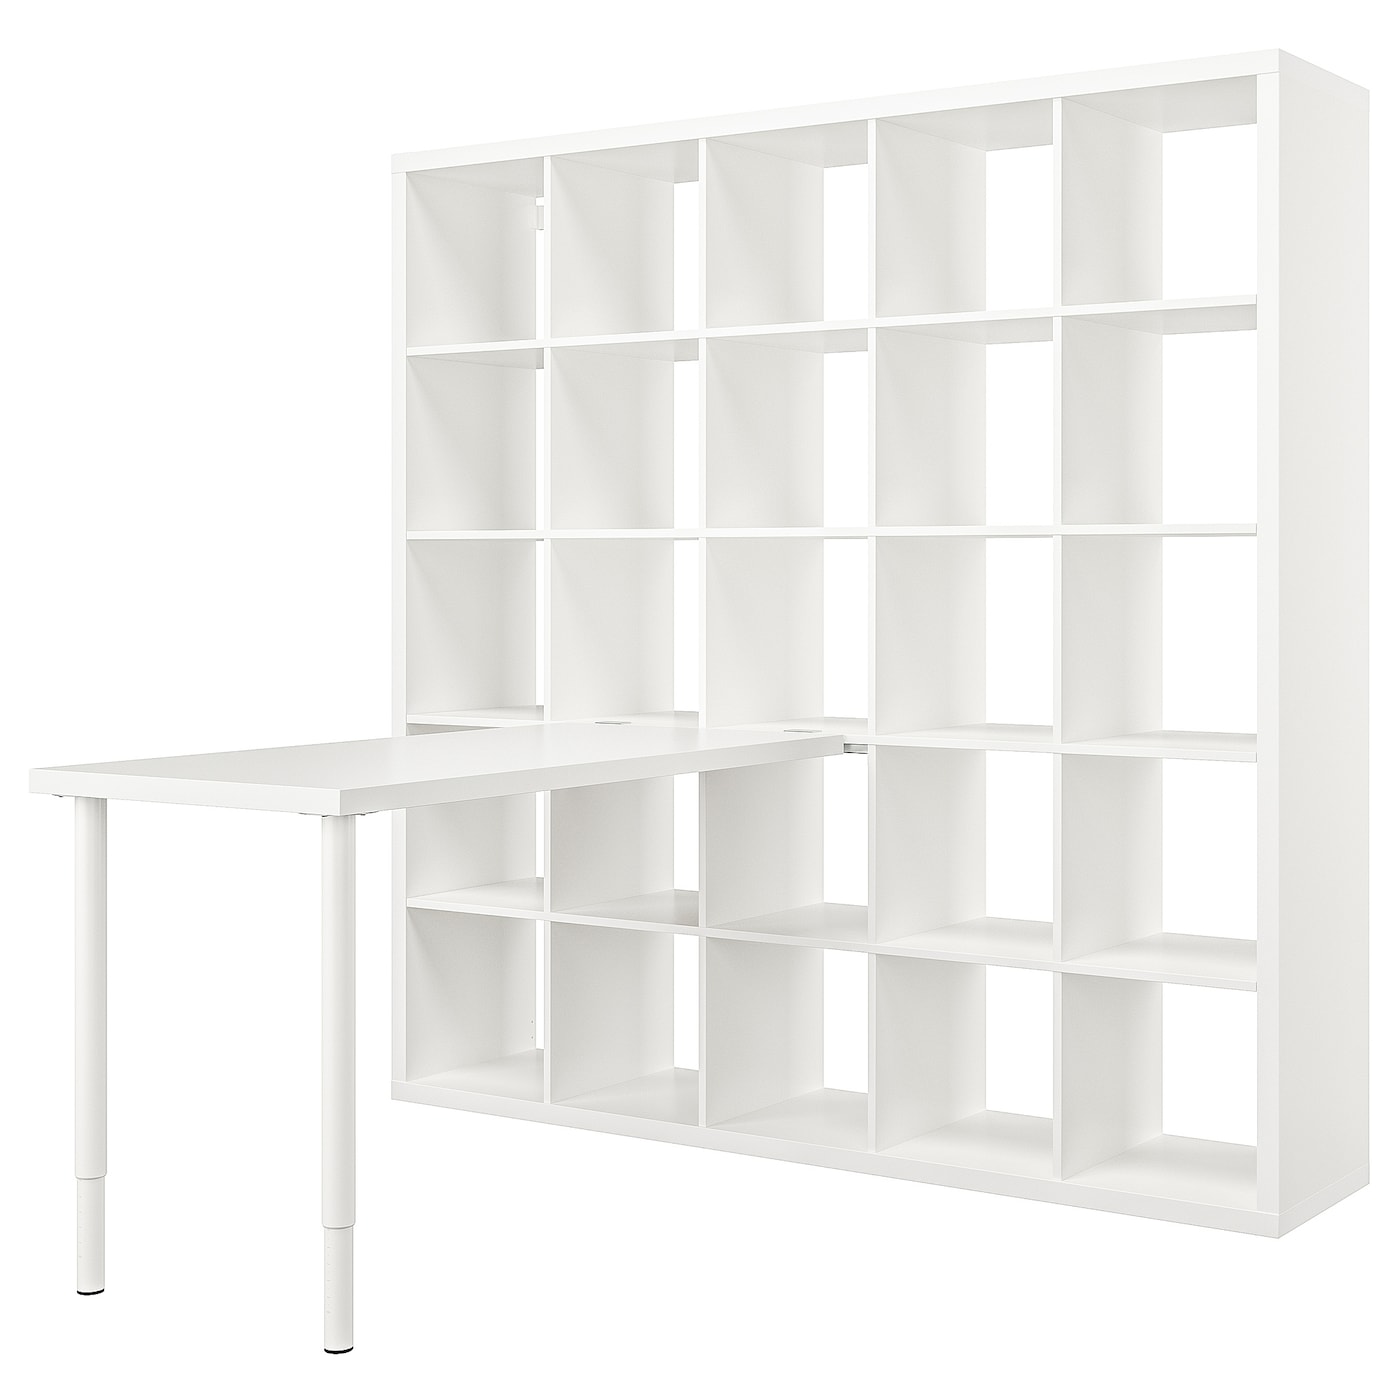 Письменный стол с книжной полкой 25 ячеек - IKEA LAGKAPTEN/KALLAX/ ЛАГКАПТЕН/КАЛЛАКС ИКЕА, белый